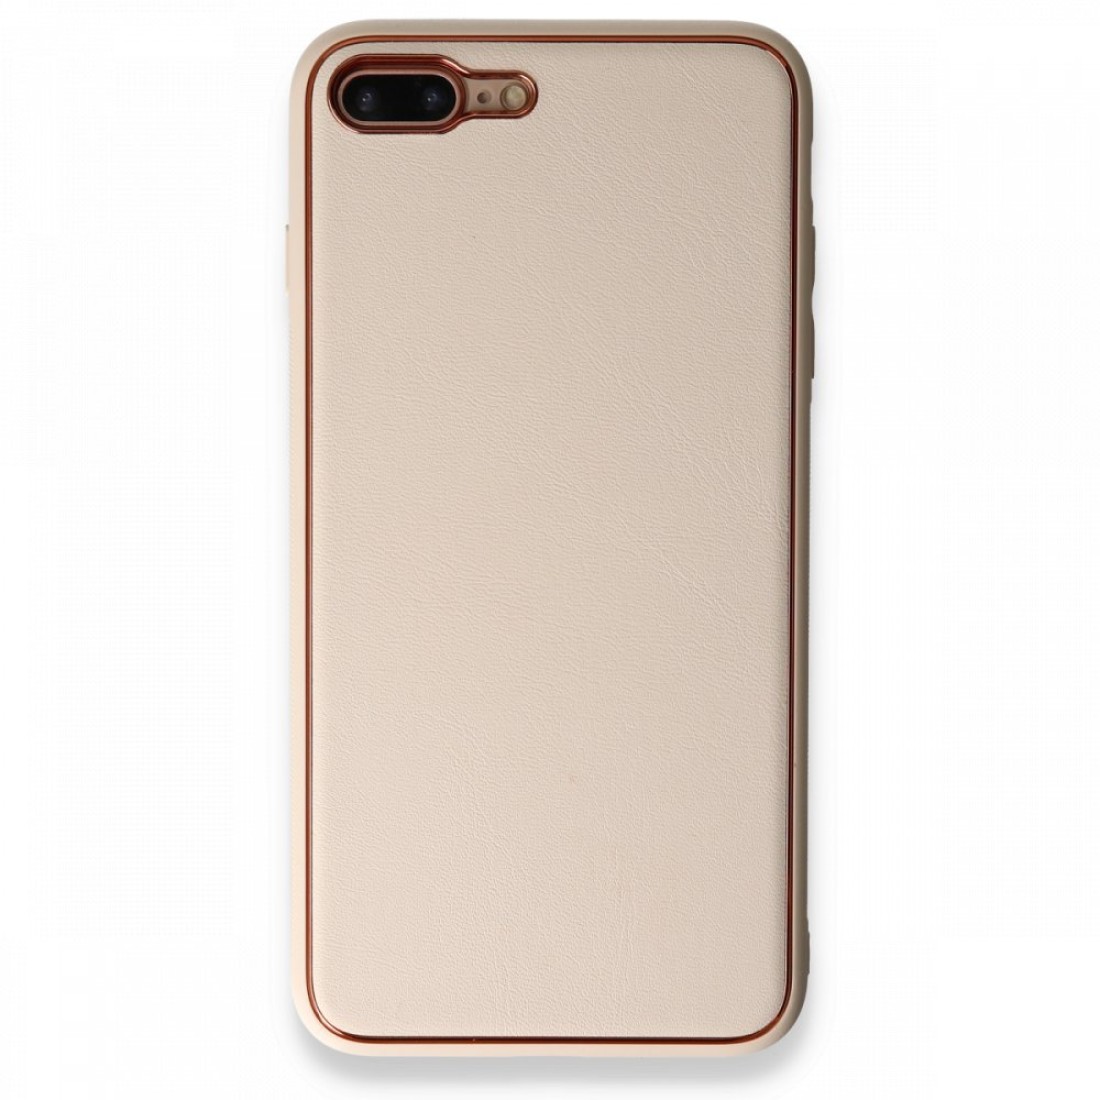 Apple iPhone 8 Plus Kılıf Coco Deri Silikon Kapak - Gold